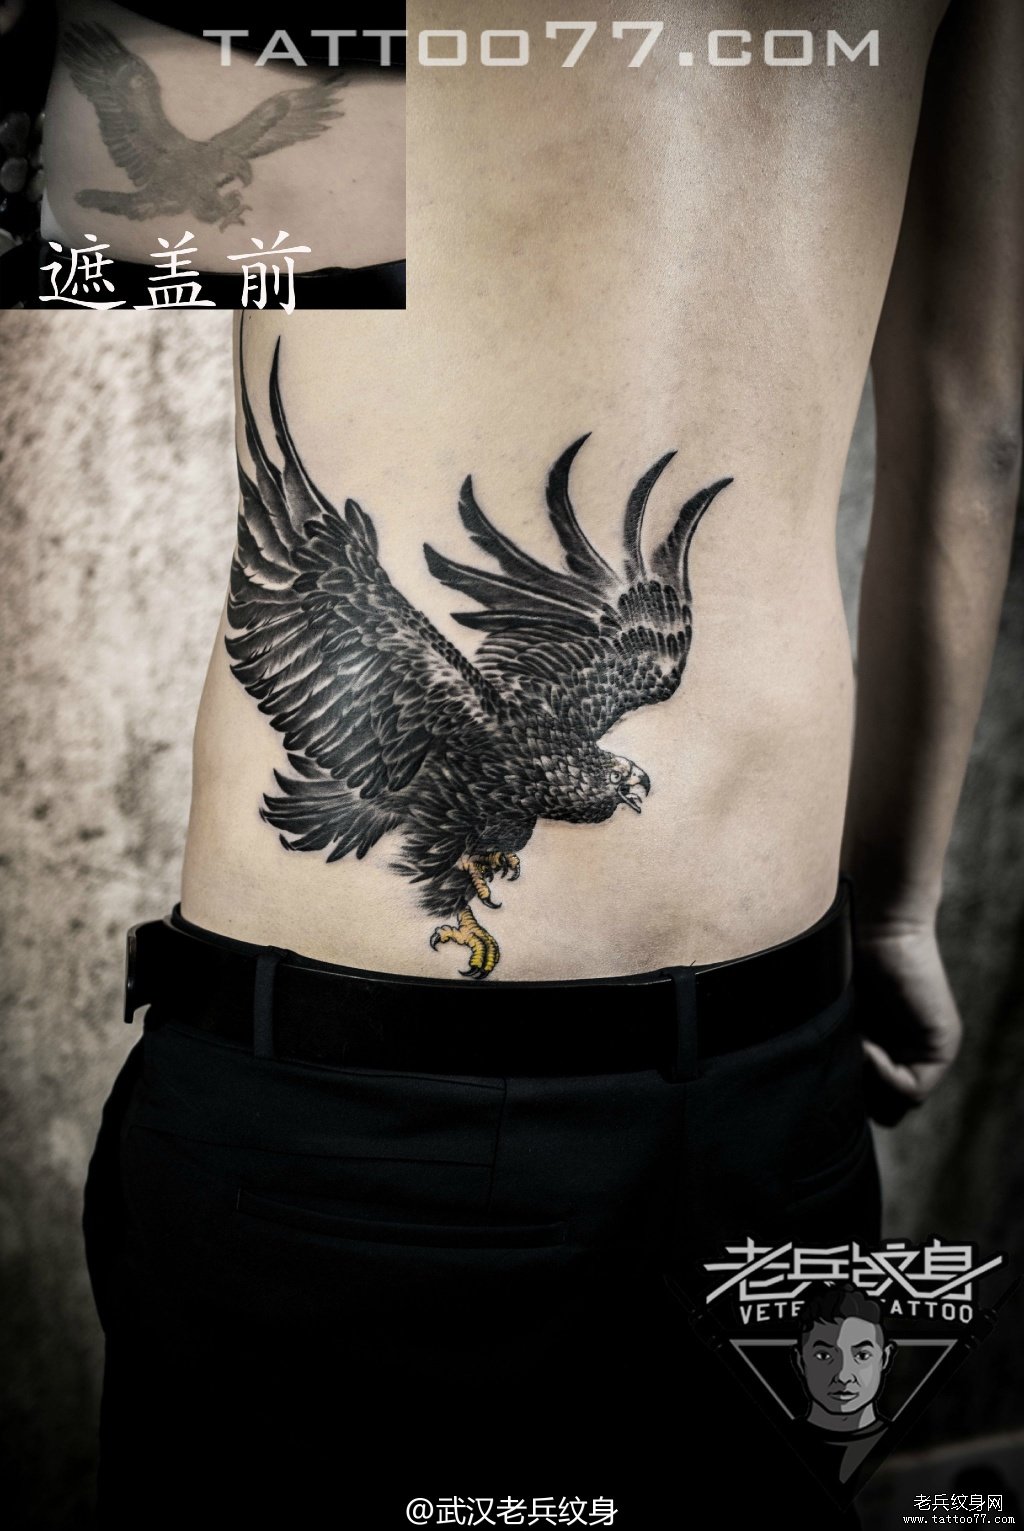 腰部老鹰纹身图案作品遮盖旧纹身